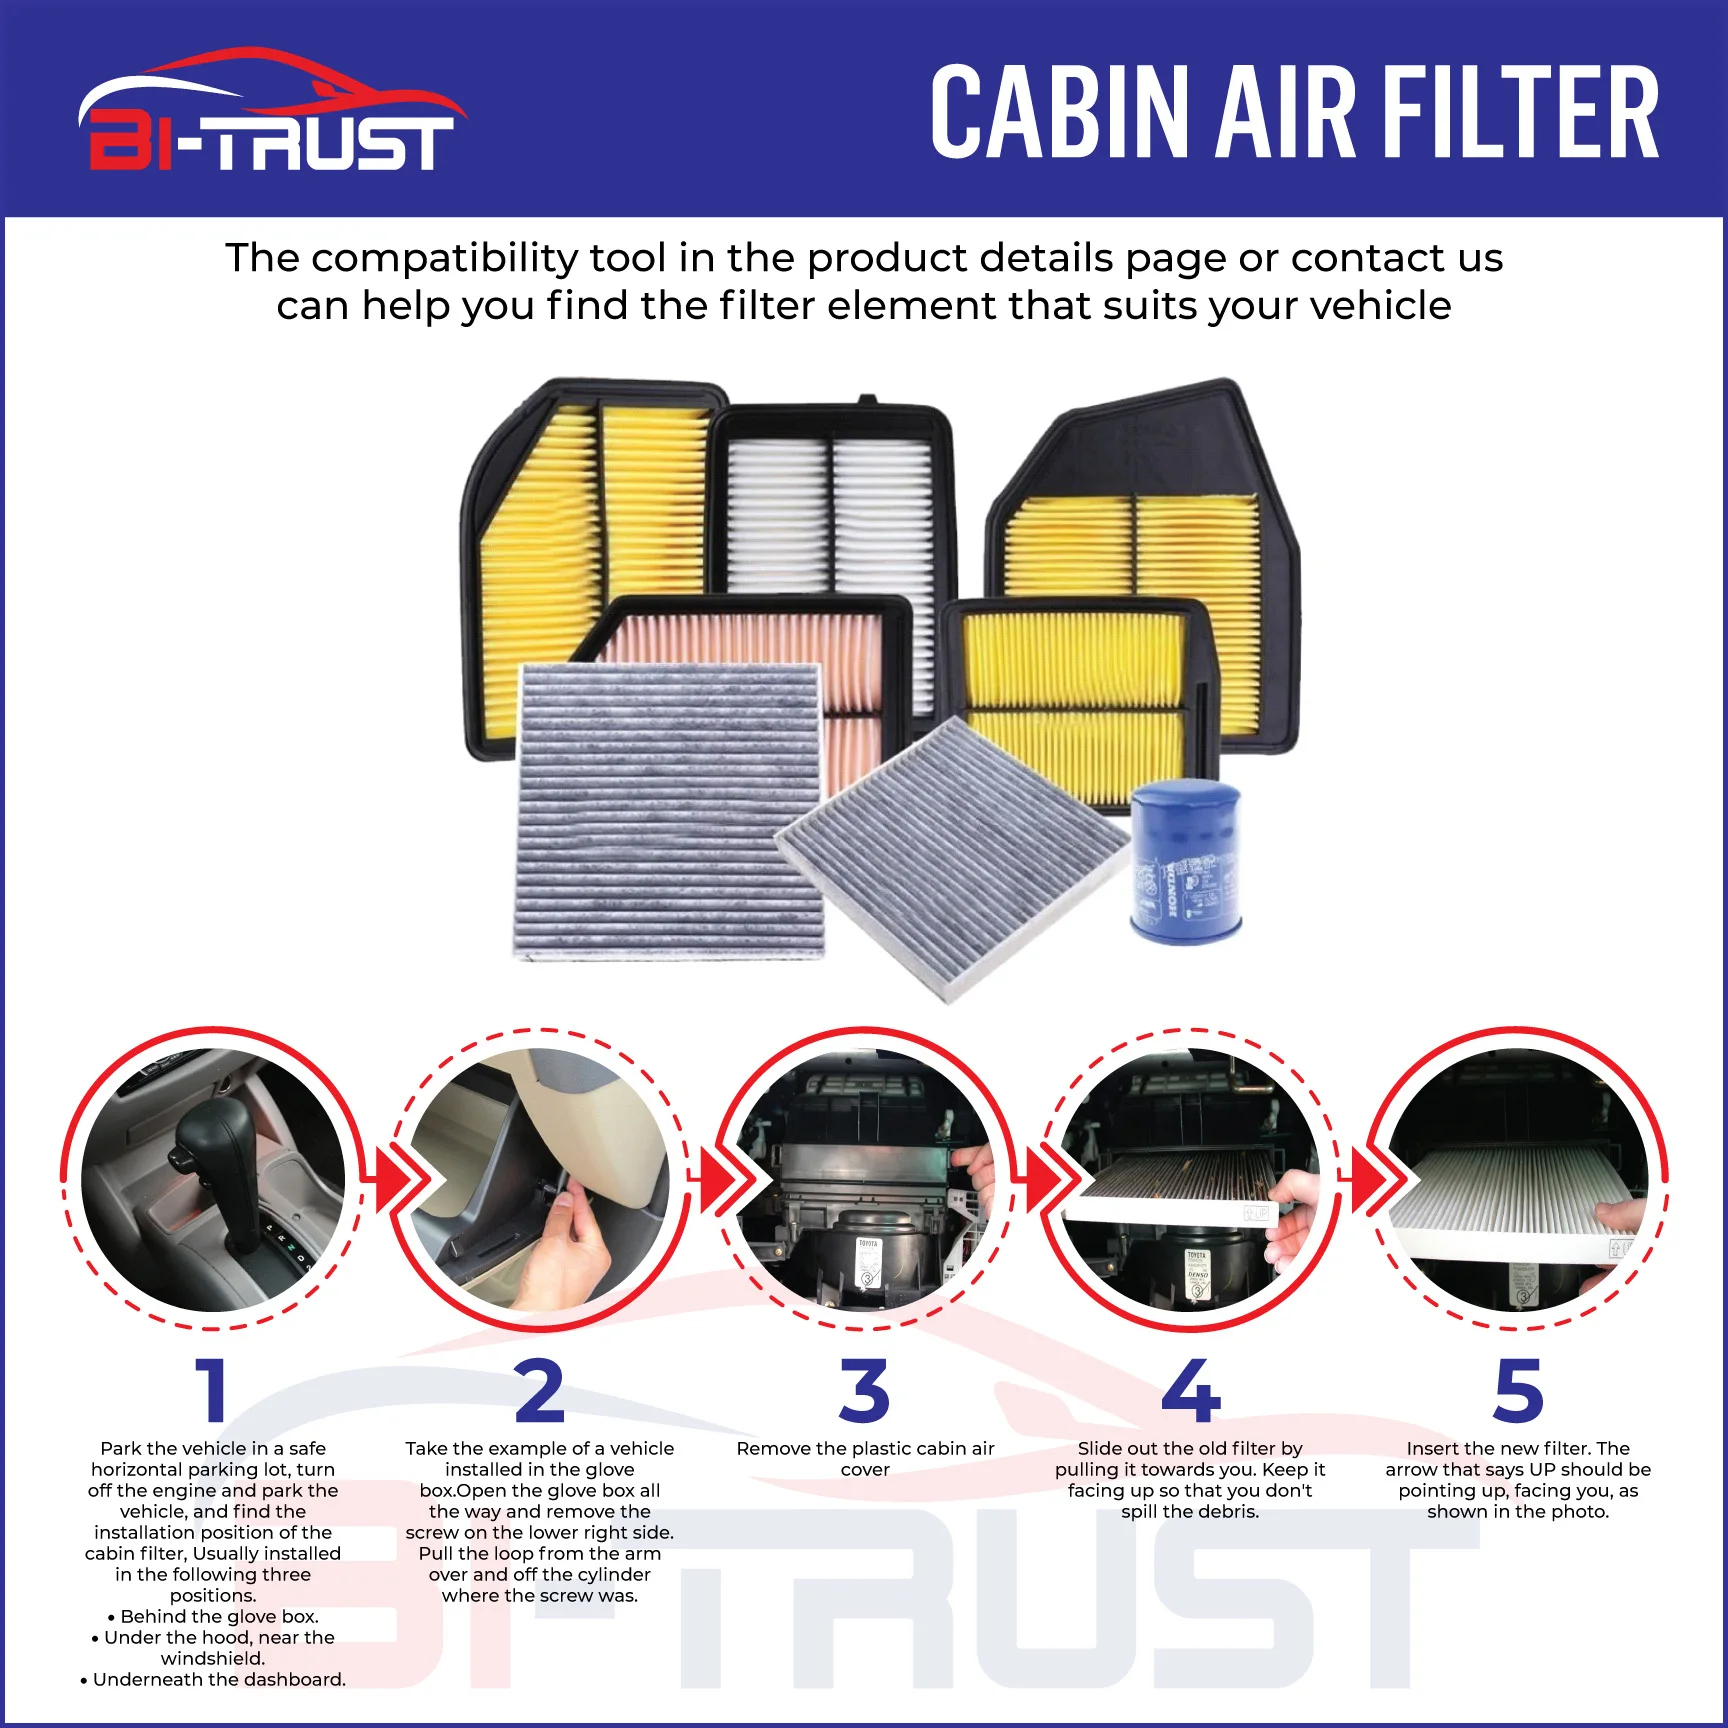 Bi-trust kabina vzduch filtr aktivován uhlík pro lexus rx350 2016-2020 V6 3.5l/toyota camry 2018-2020/prius 2016-2020